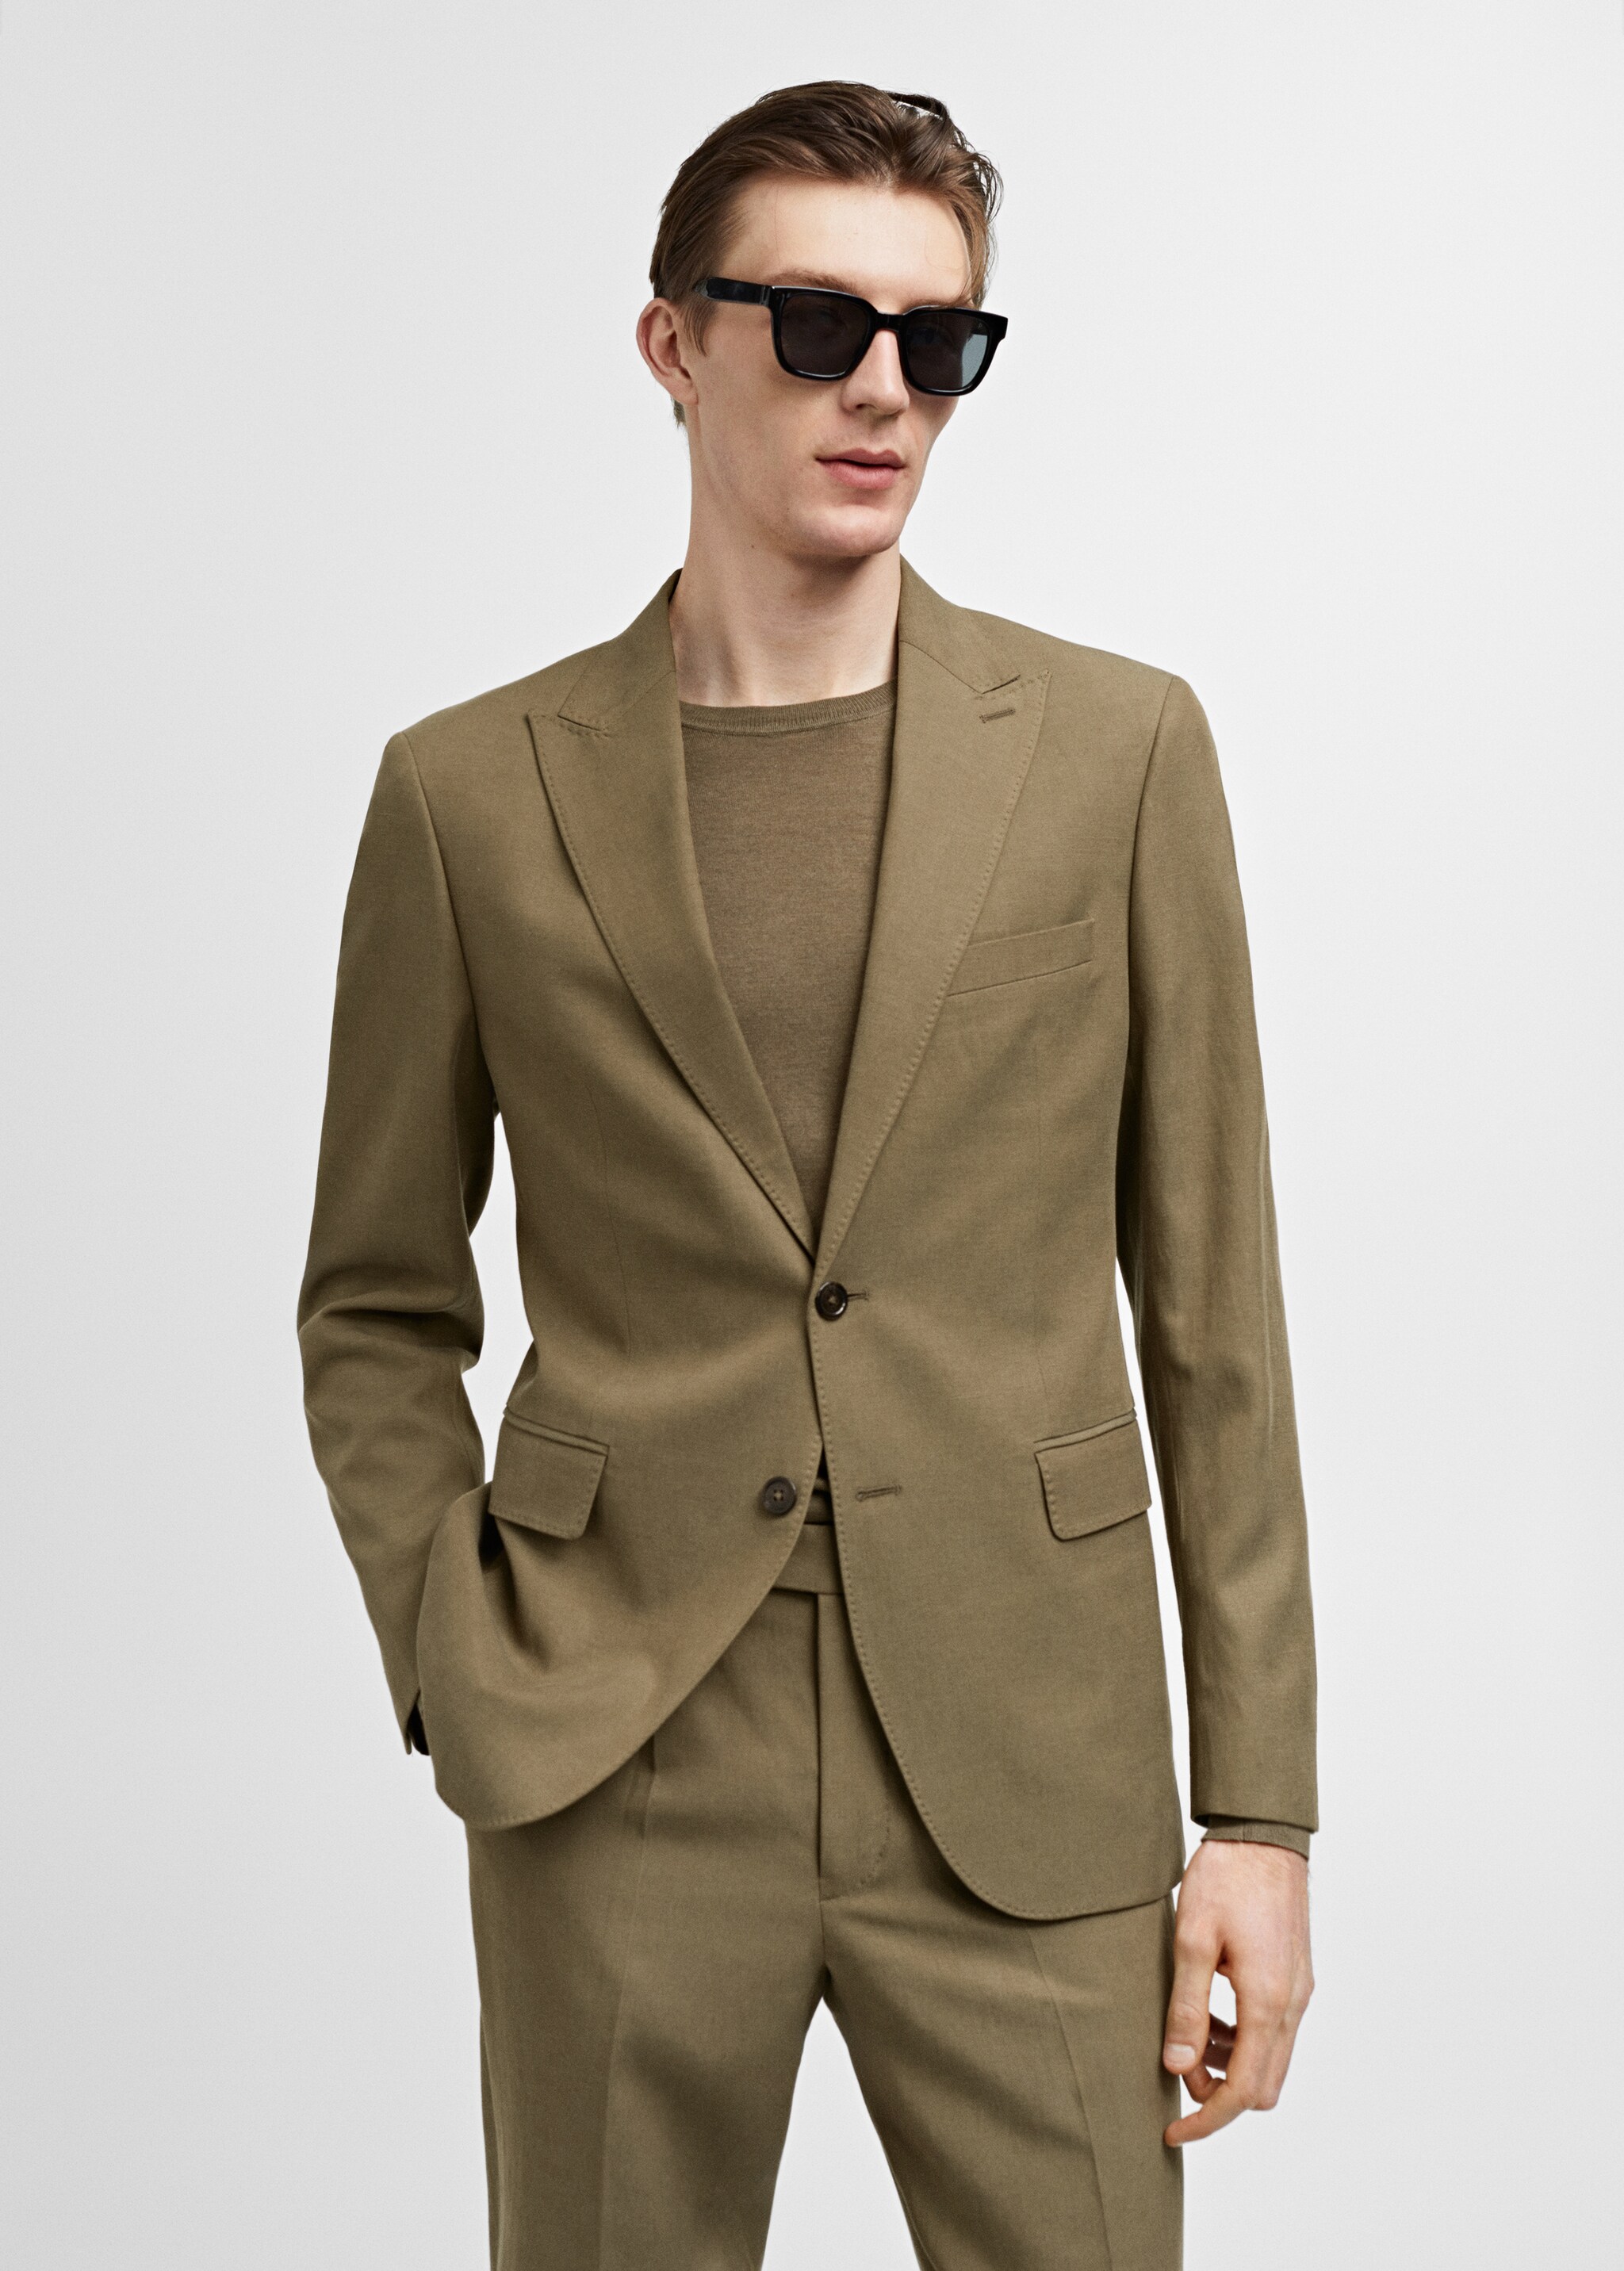 Slim fit linen and cotton suit jacket - Medium plane